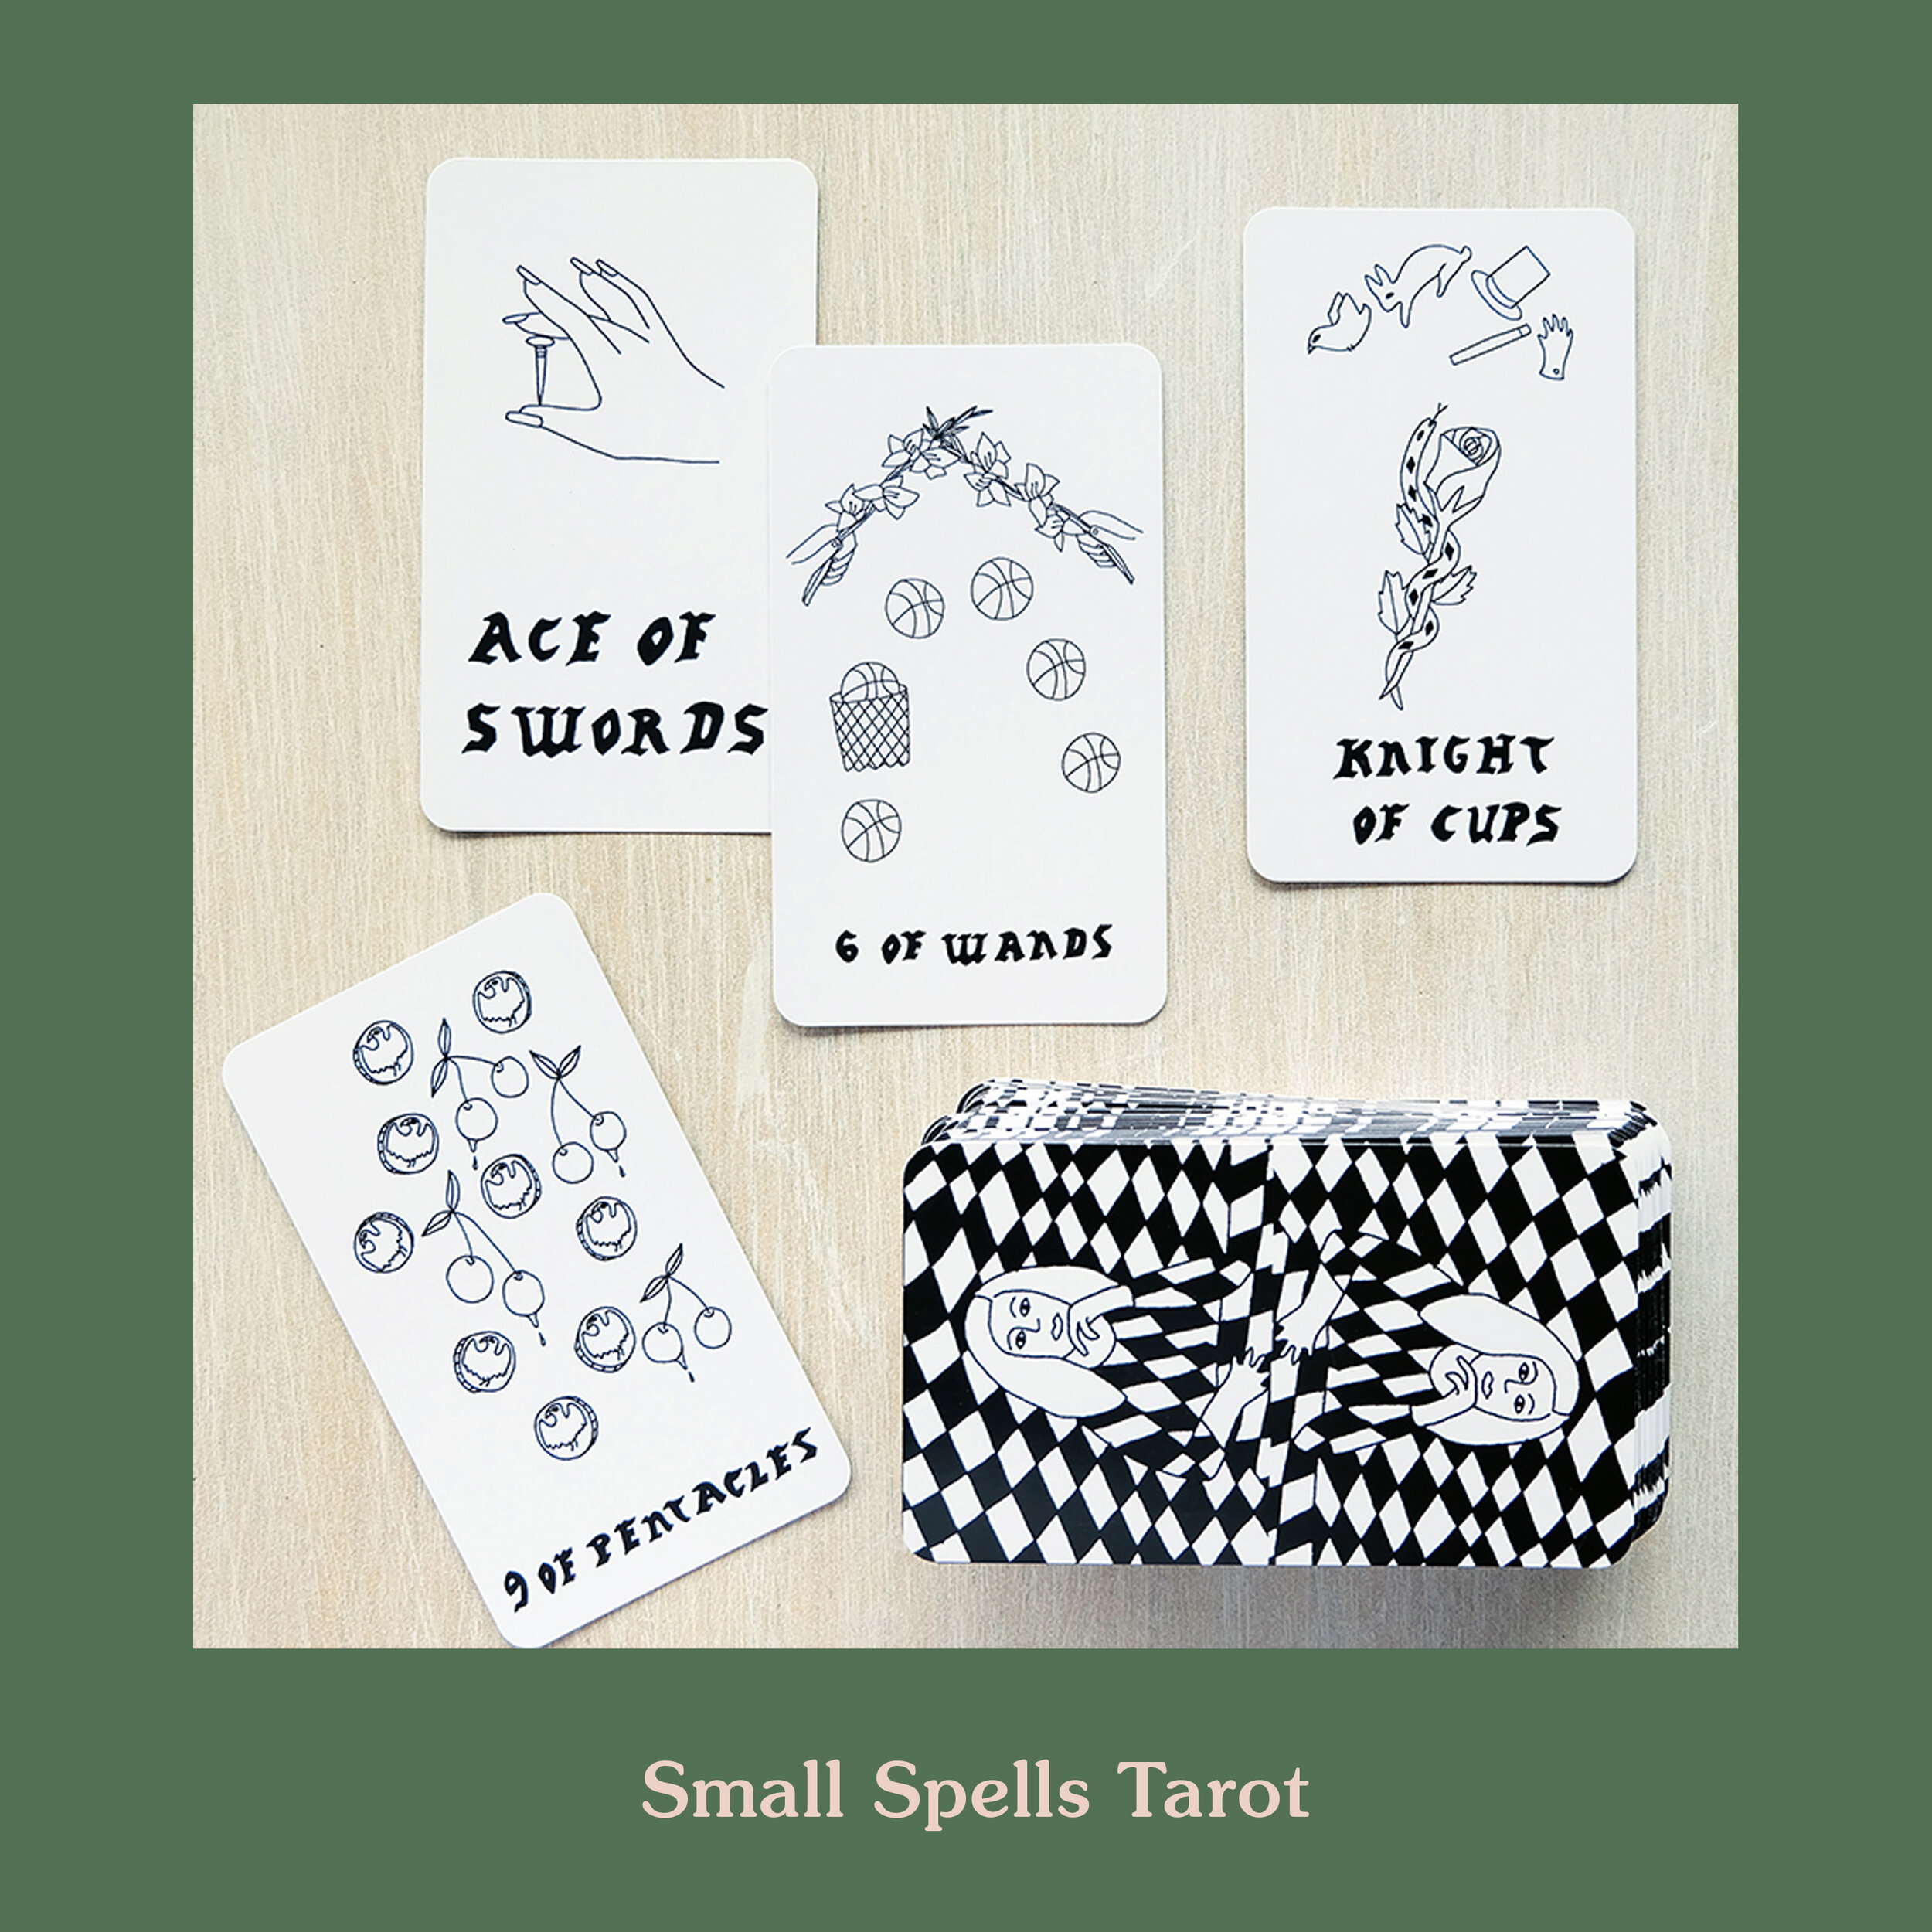 Small Spells Tarot